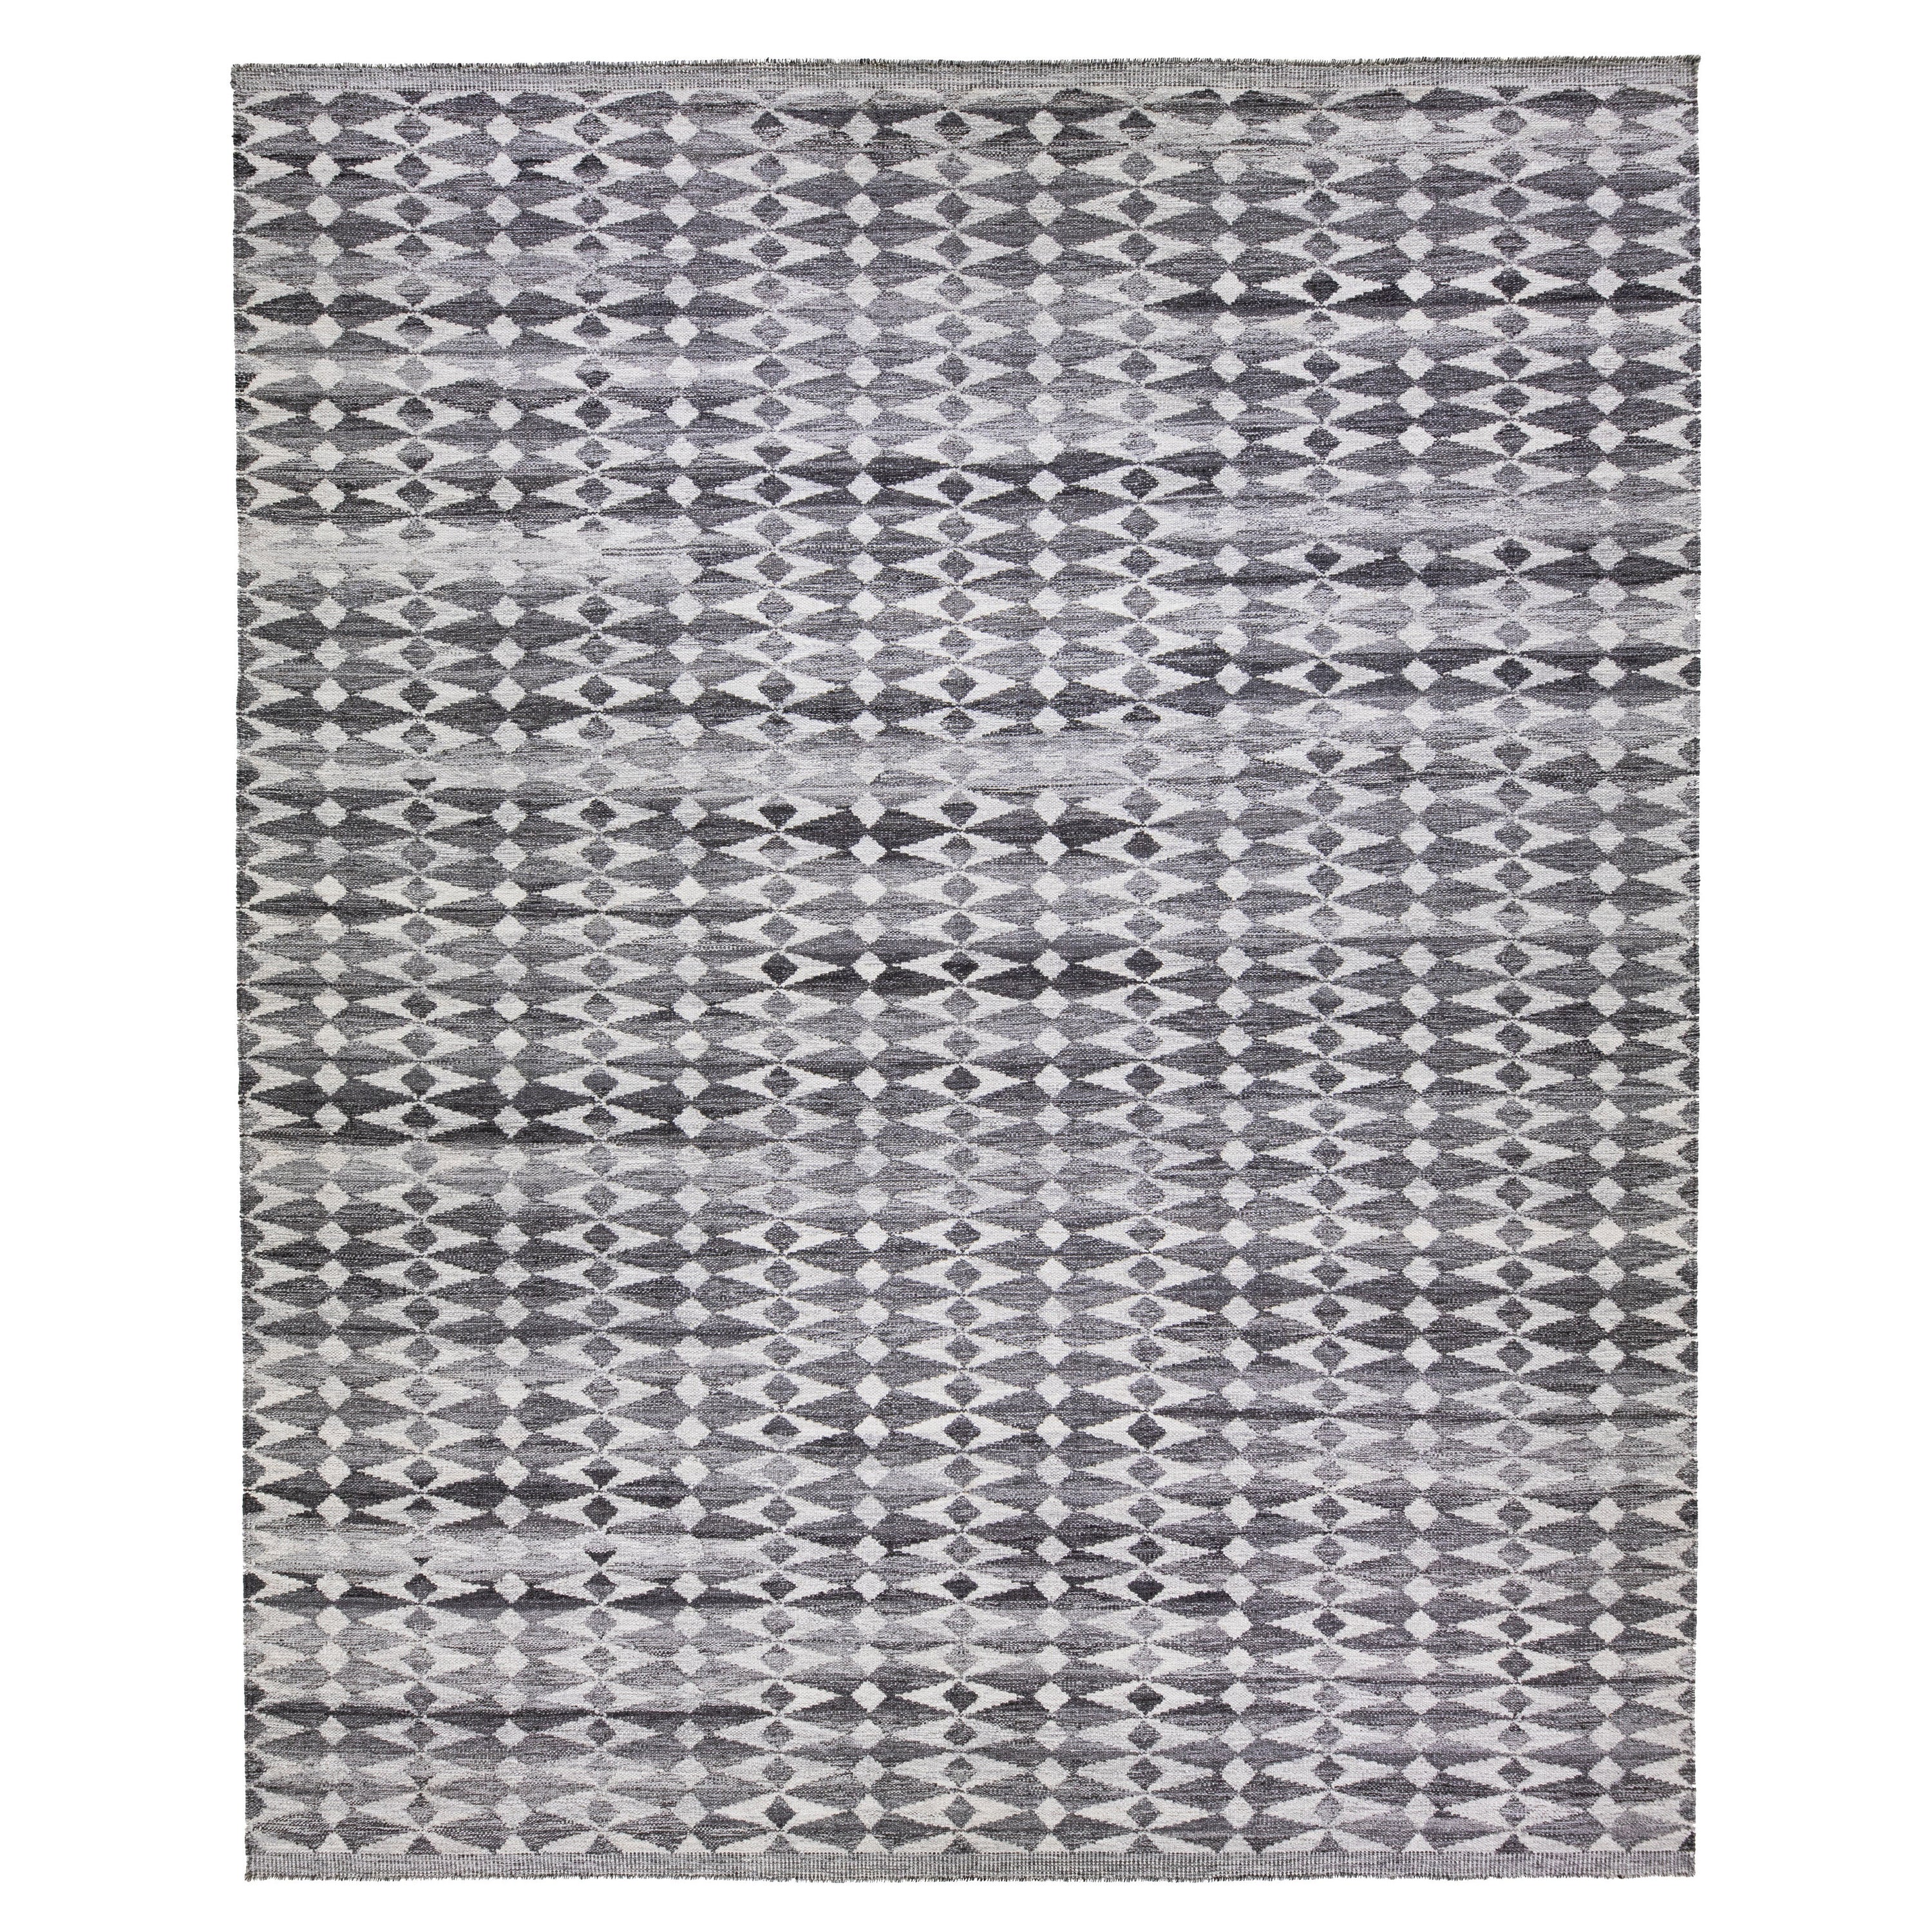 Handgefertigter übergroßer grauer Wollteppich im modernen schwedischen Stil mit geometrischem Muster